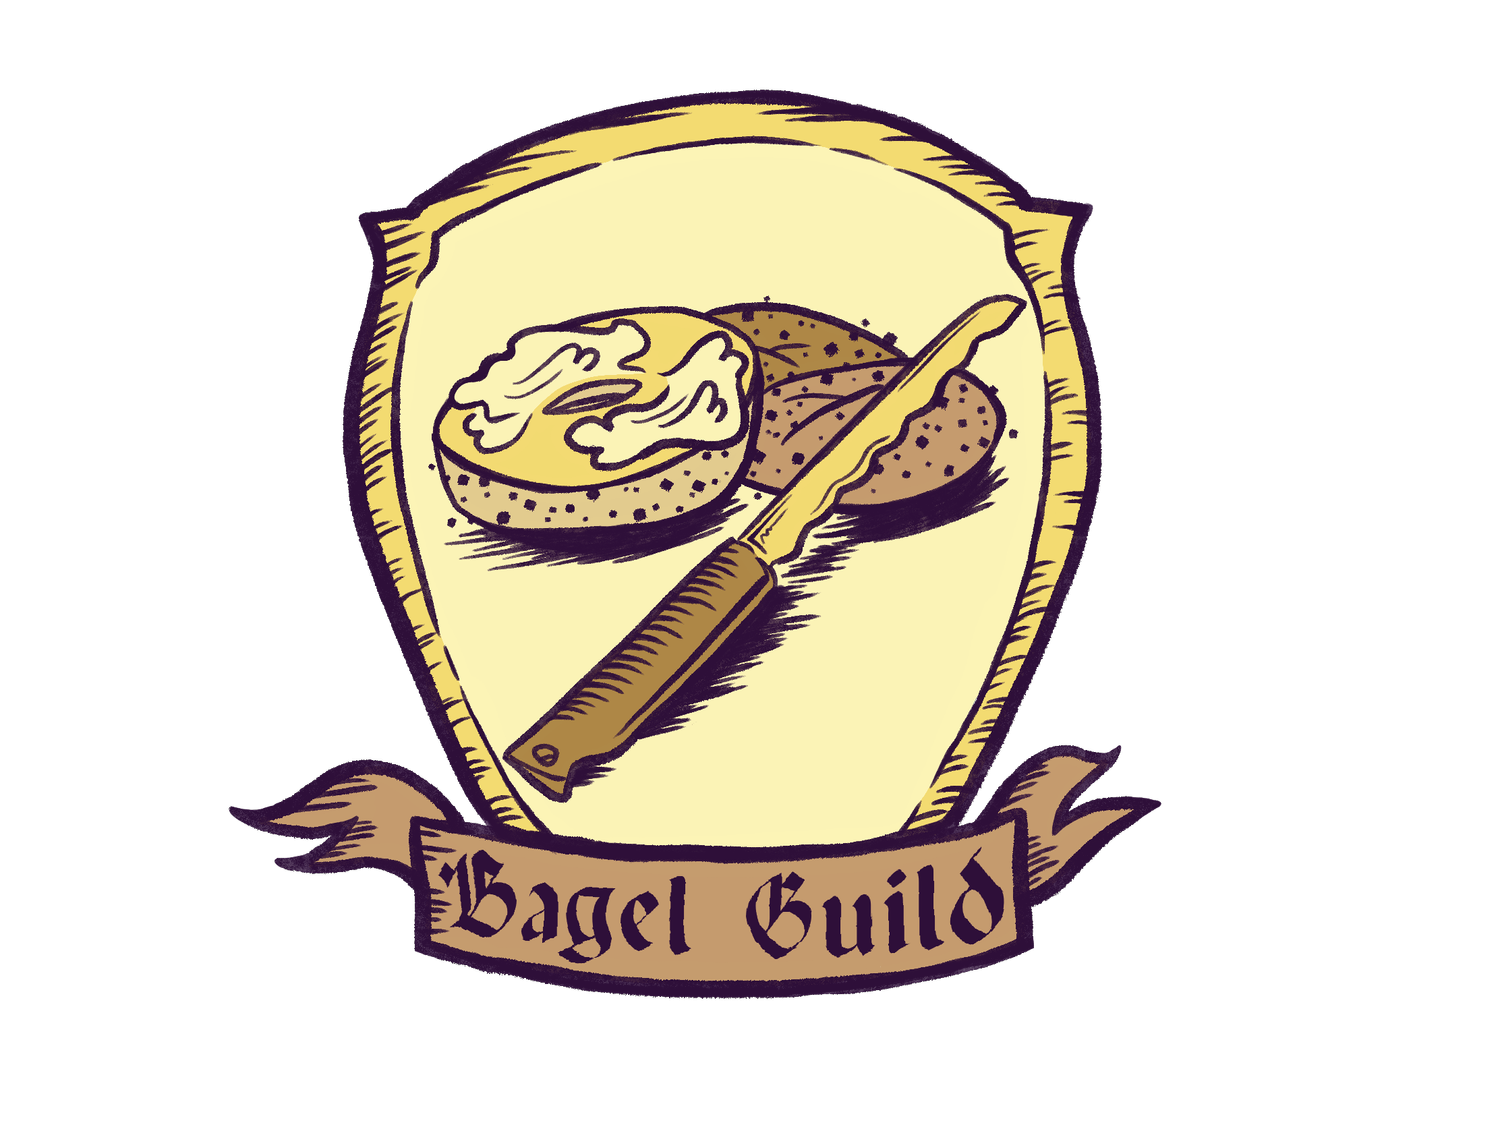 Bagel Guild